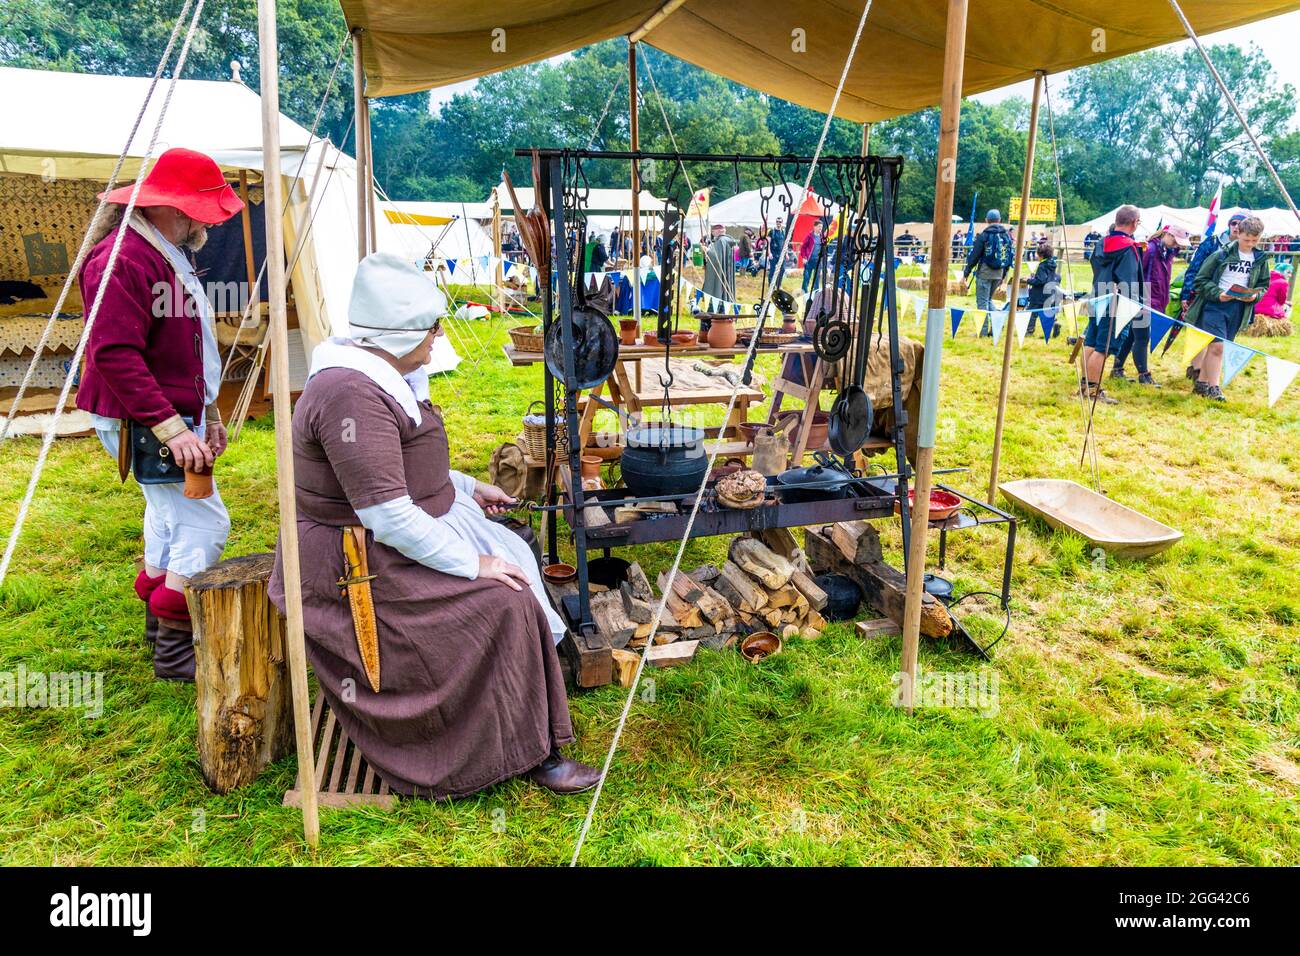 8. August 2021 - Küche im mittelalterlichen Stil (Jane’s Medieval Kitchen) beim Medieval Festival Loxwood Joust, West Sussex, England, Großbritannien Stockfoto